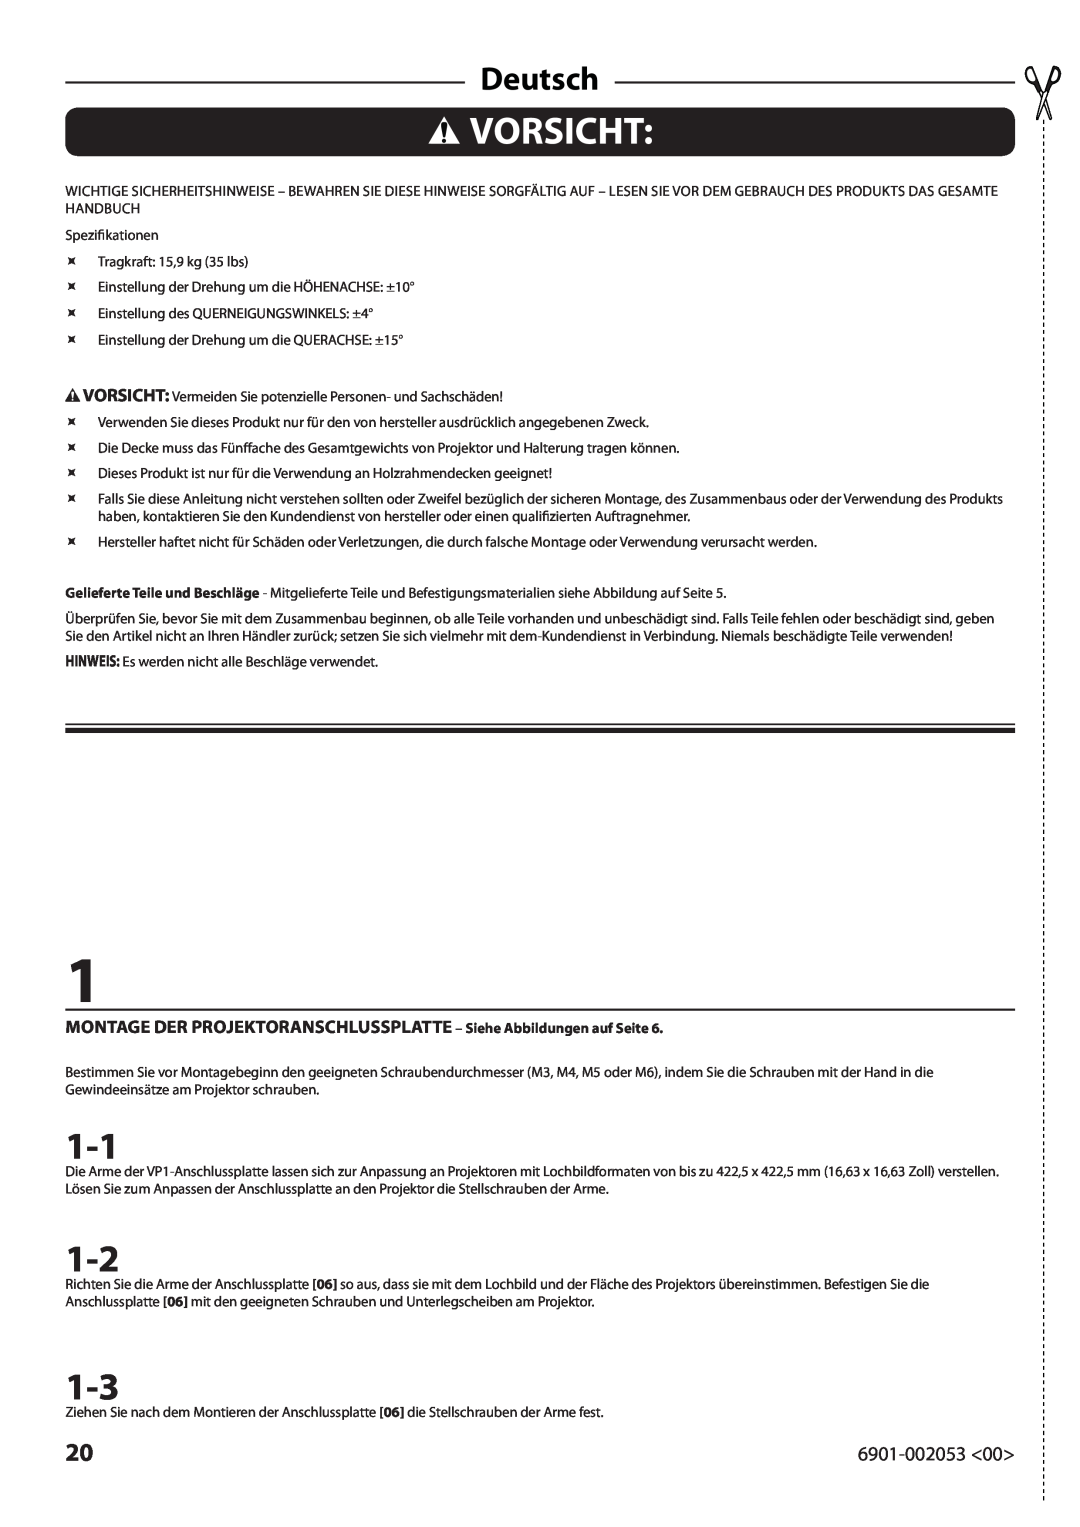 Sanus Systems VP1 manual Vorsicht, Deutsch, MONTAGE DER PROJEKTORANSCHLUSSPLATTE - Siehe Abbildungen auf Seite 